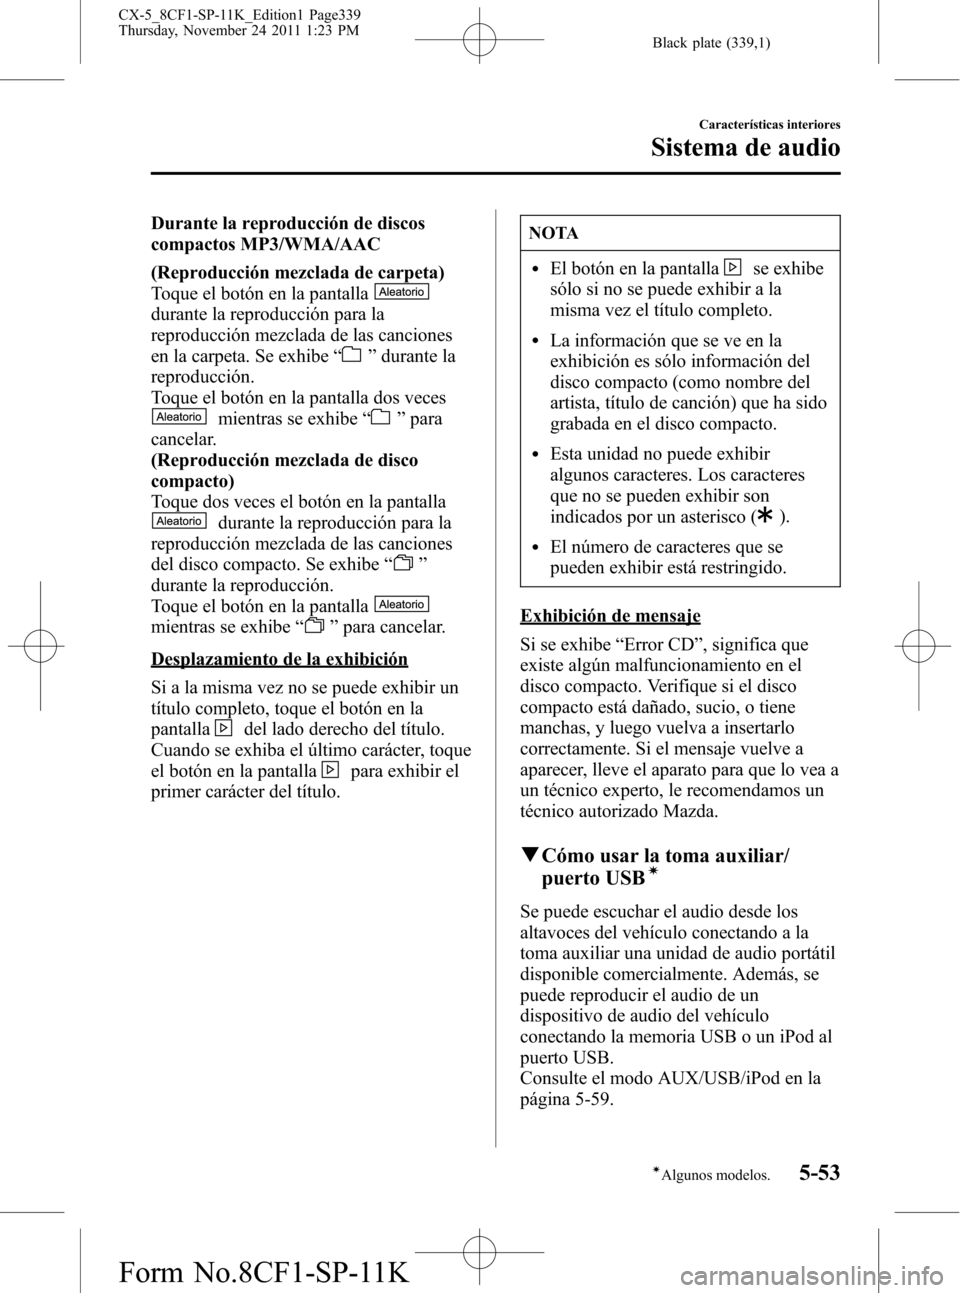 MAZDA MODEL CX-5 2012  Manual del propietario (in Spanish)  Black plate (339,1)
Durante la reproducción de discos
compactos MP3/WMA/AAC
(Reproducción mezclada de carpeta)
Toque el botón en la pantalla
durante la reproducción para la
reproducción mezclada 